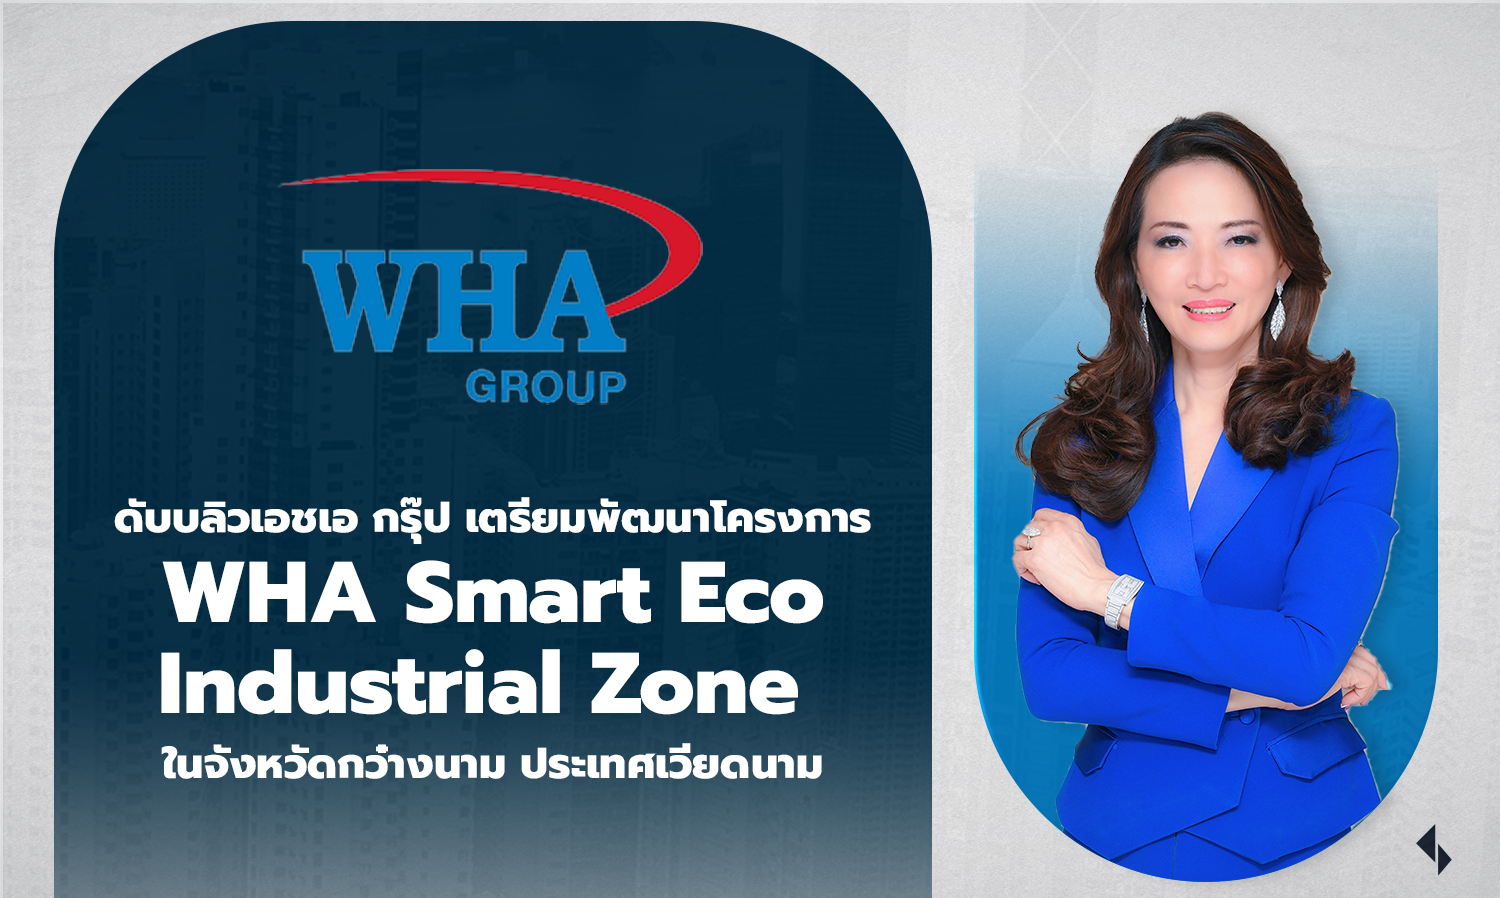 ดับบลิวเอชเอ กรุ๊ป เตรียมพัฒนาโครงการ WHA Smart Eco Industrial Zone ในจังหวัดกว๋างนาม ประเทศเวียดนาม